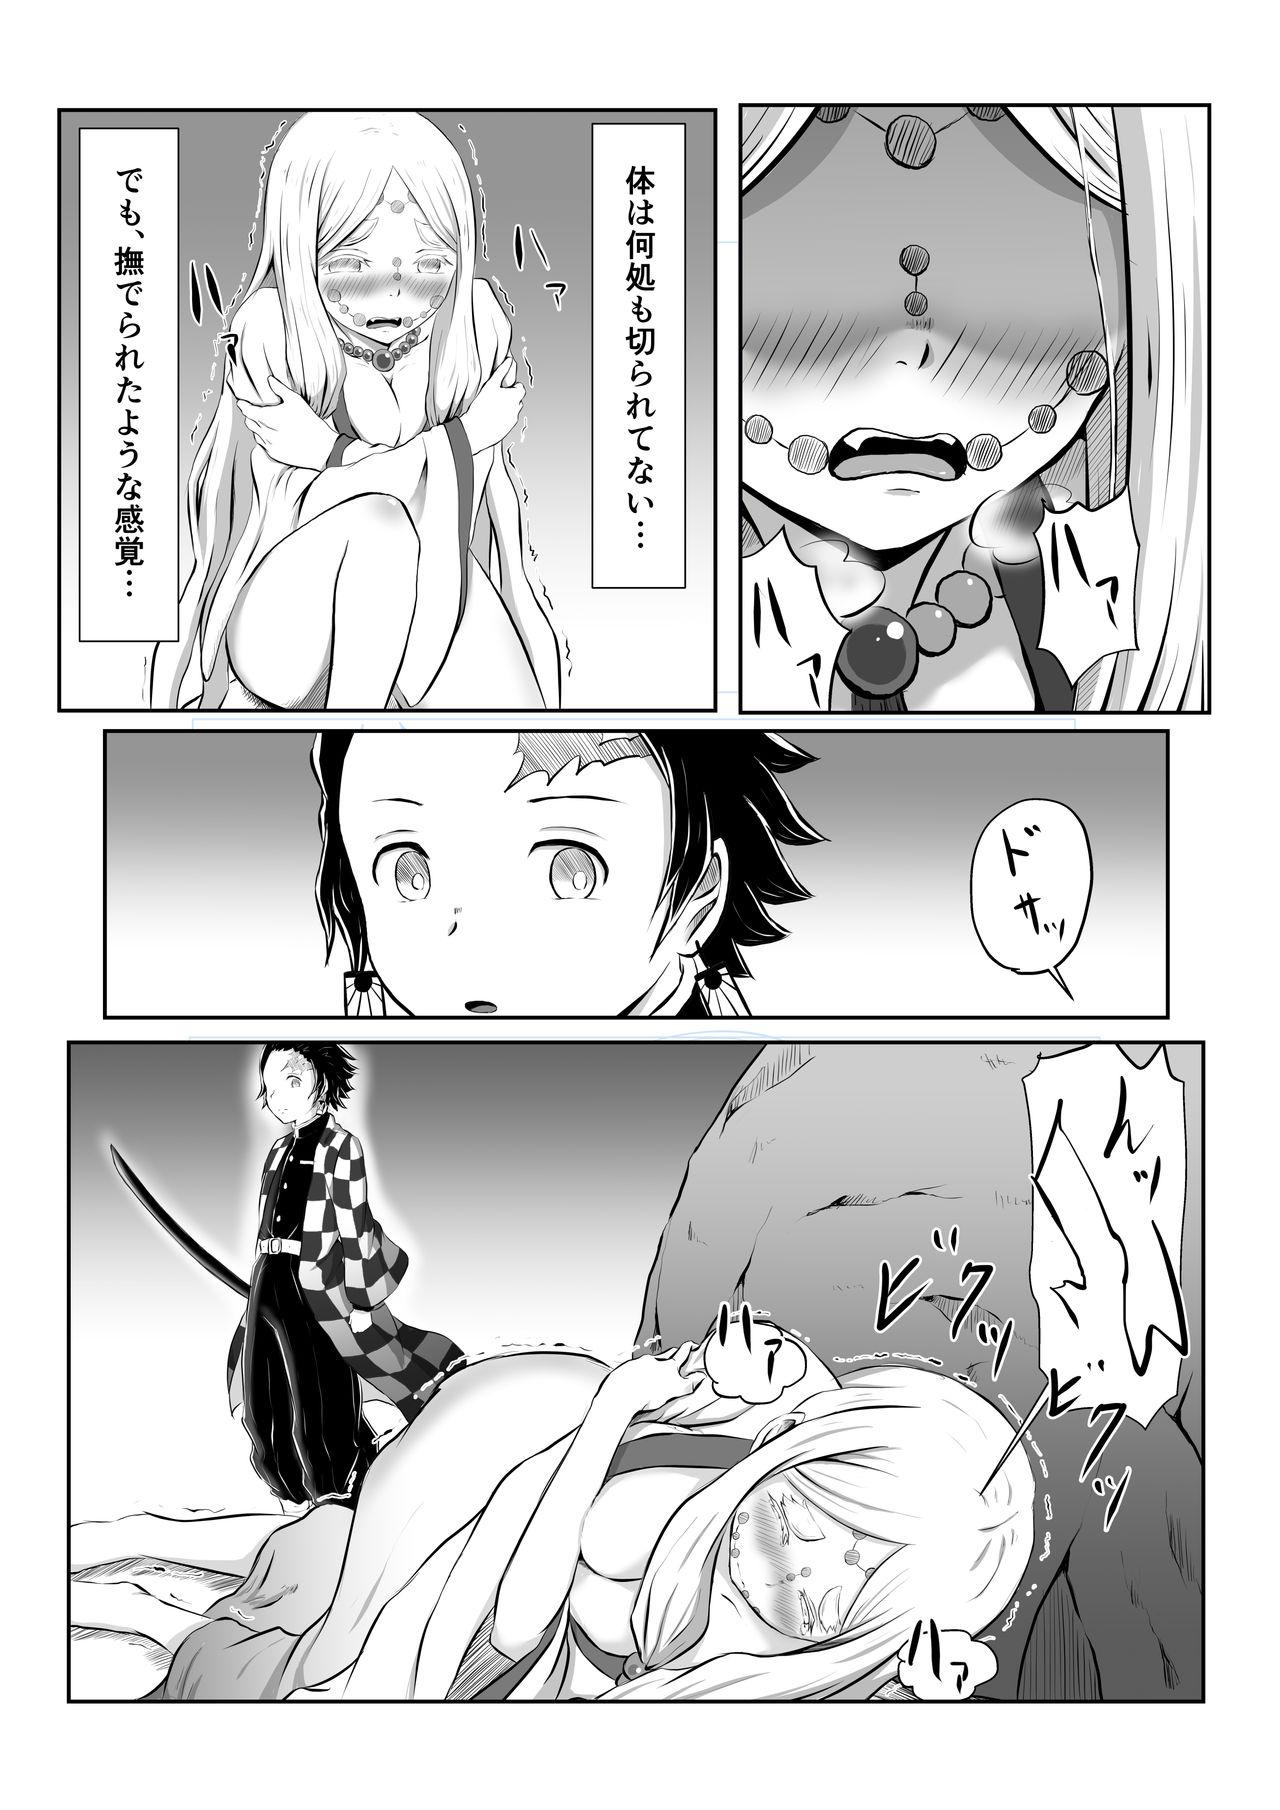 Mature Hinokami Sex. - Kimetsu no yaiba | demon slayer Hiddencam - Page 5